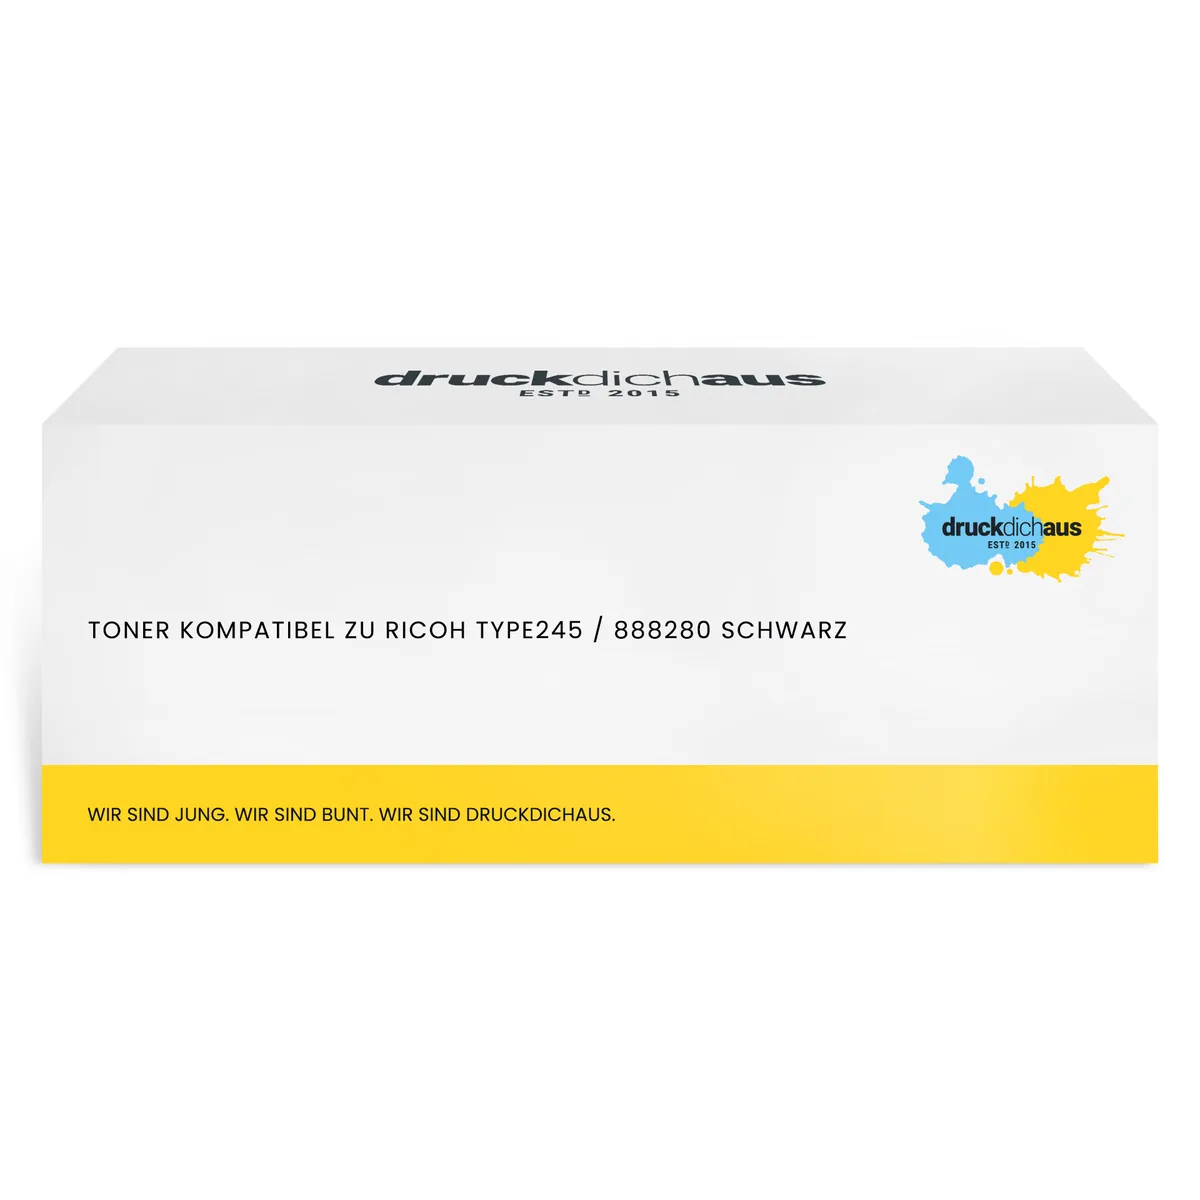 Toner kompatibel zu Ricoh TYPE245 / 888280 schwarz